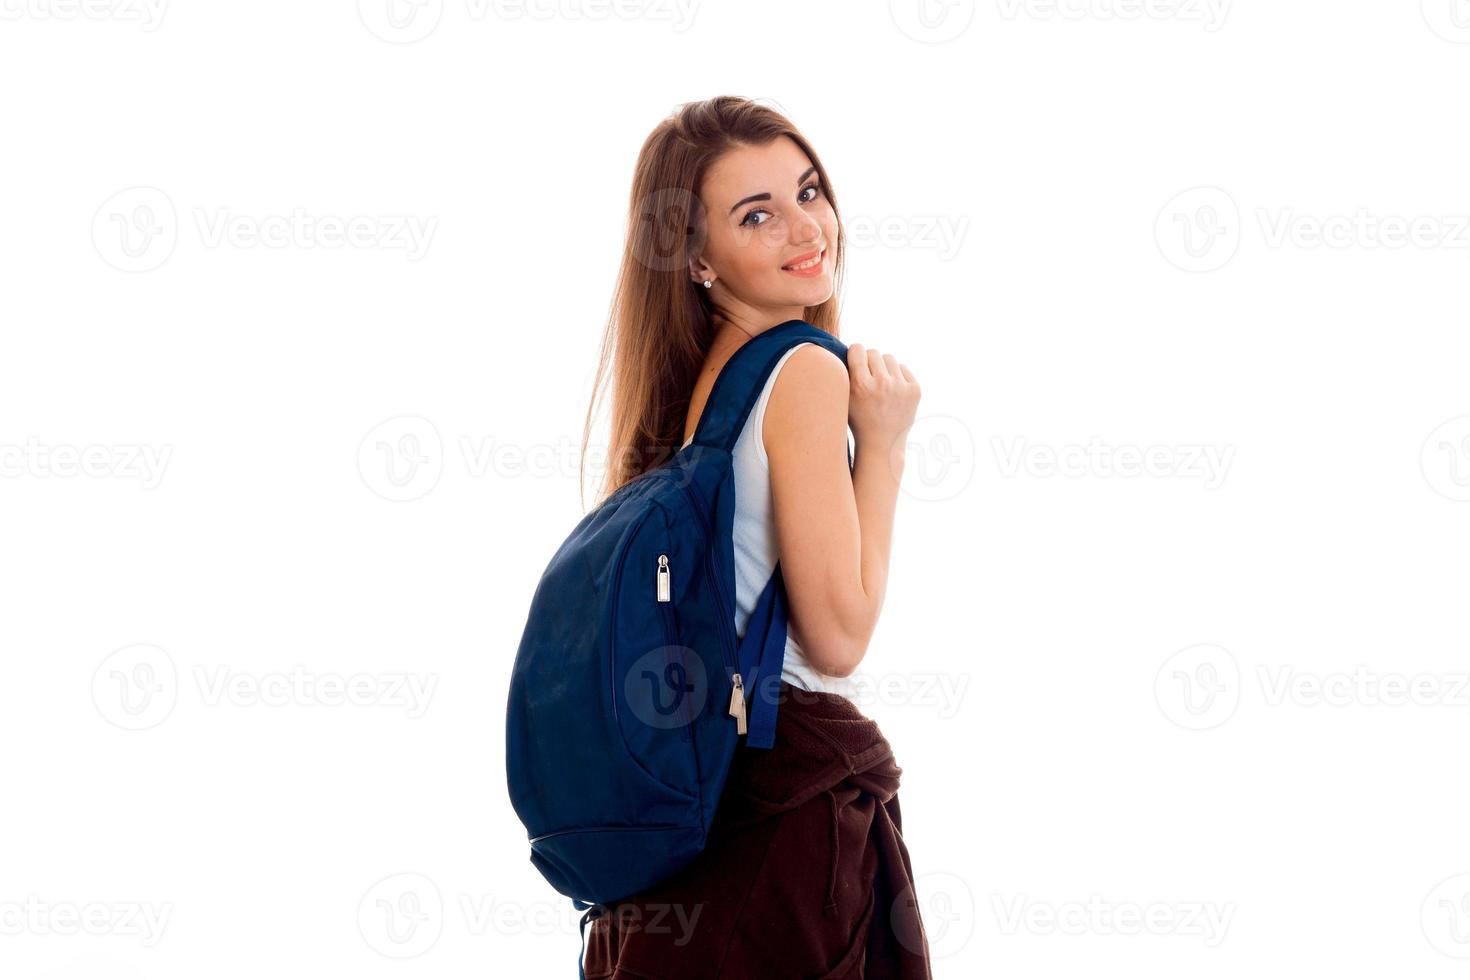 feliz joven estudiante chica con mochila azul en el hombro sonriendo en cámara aislada sobre fondo blanco foto